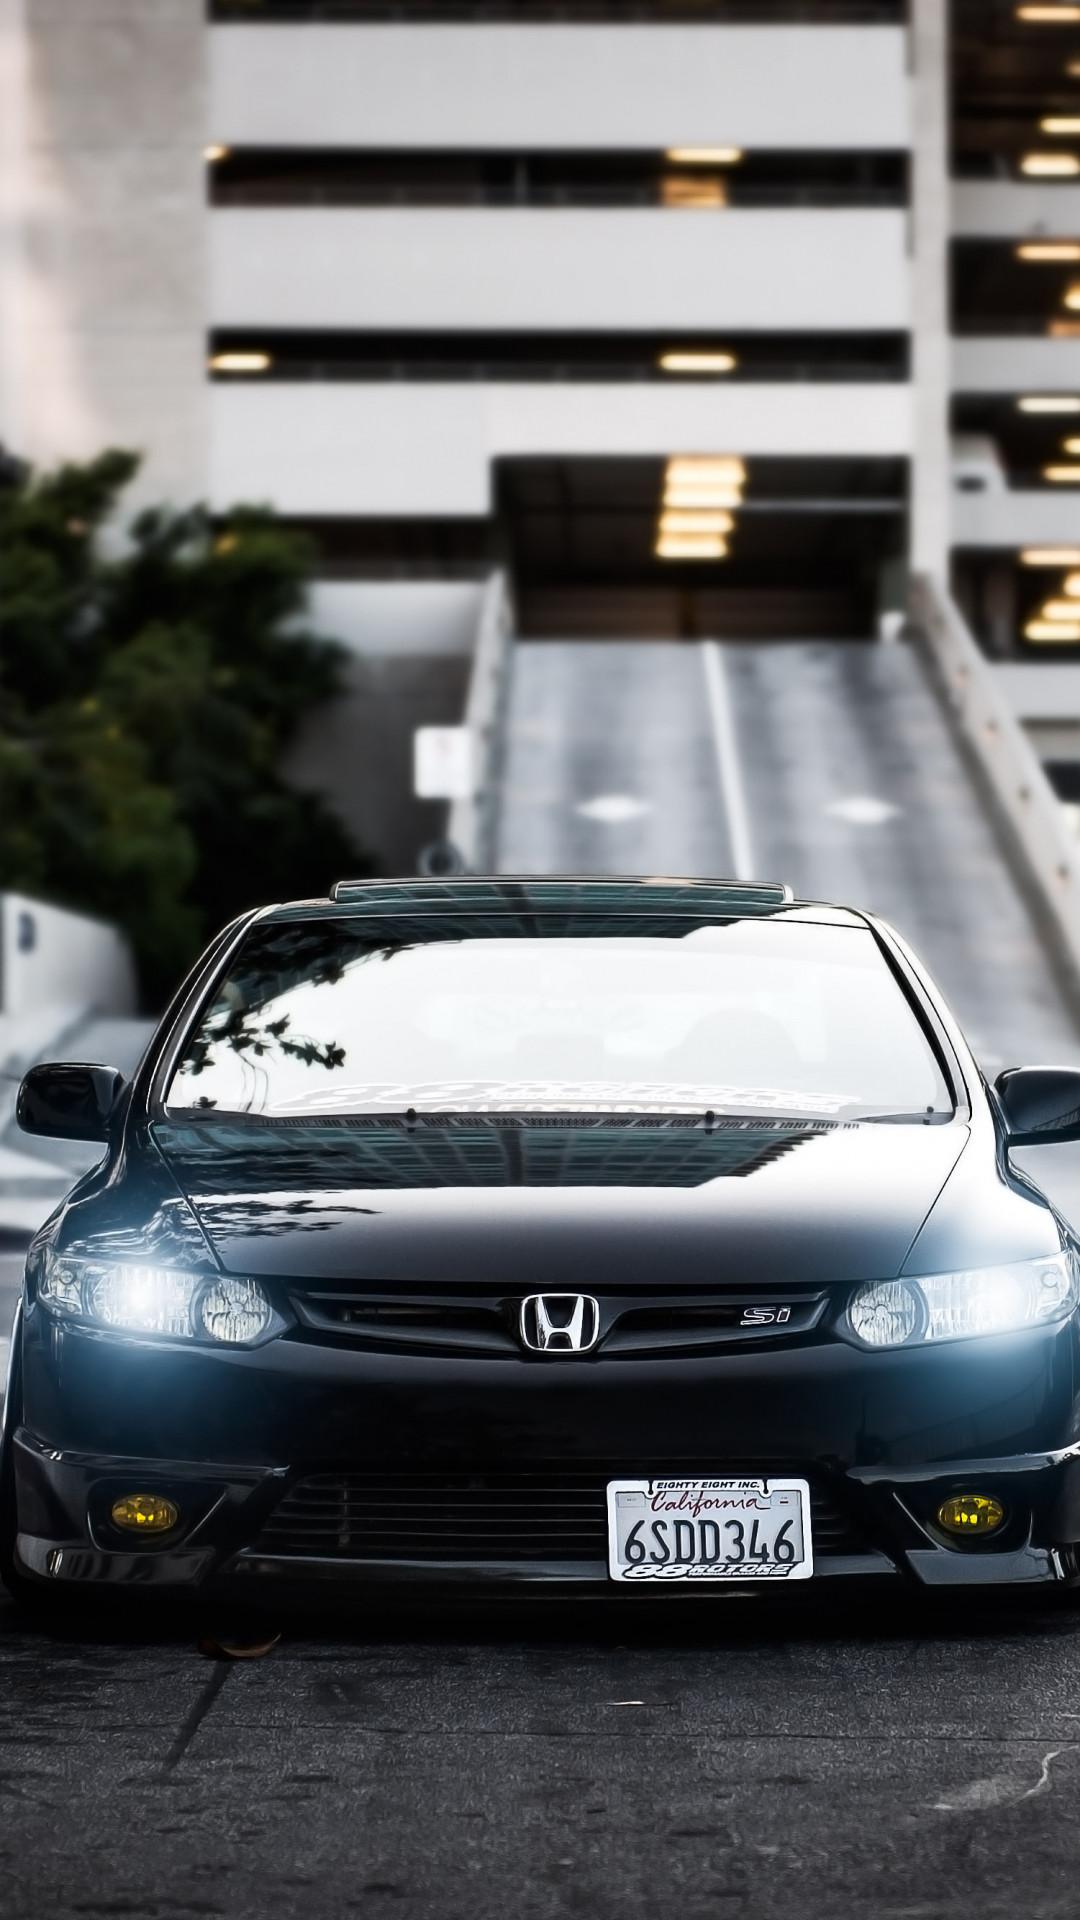 Honda Civic Si Wallpaper